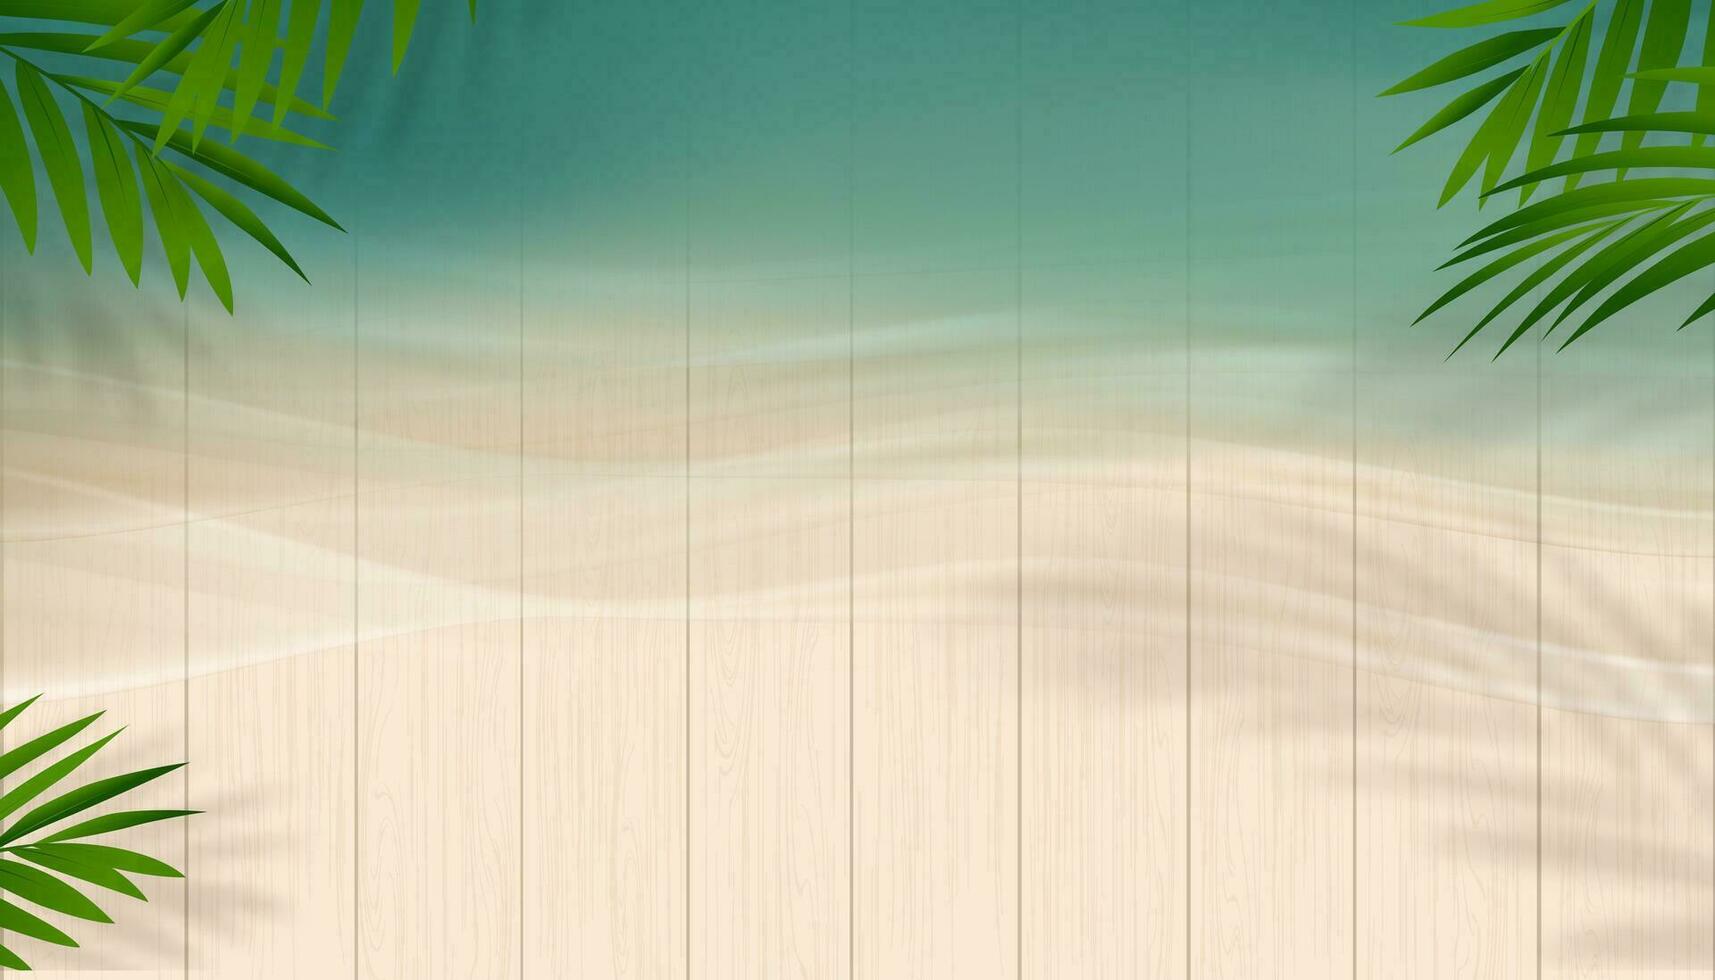 Sommer- Hintergrund Verkauf Banner template.top Aussicht Blau Ozean mit Sanft Wellen auf Holz Textur.Hintergrund mit Palme Blätter und Schatten auf Meer strand.vektor Banner zum Sommer- Berufung, Urlaub Verkauf Beförderung vektor